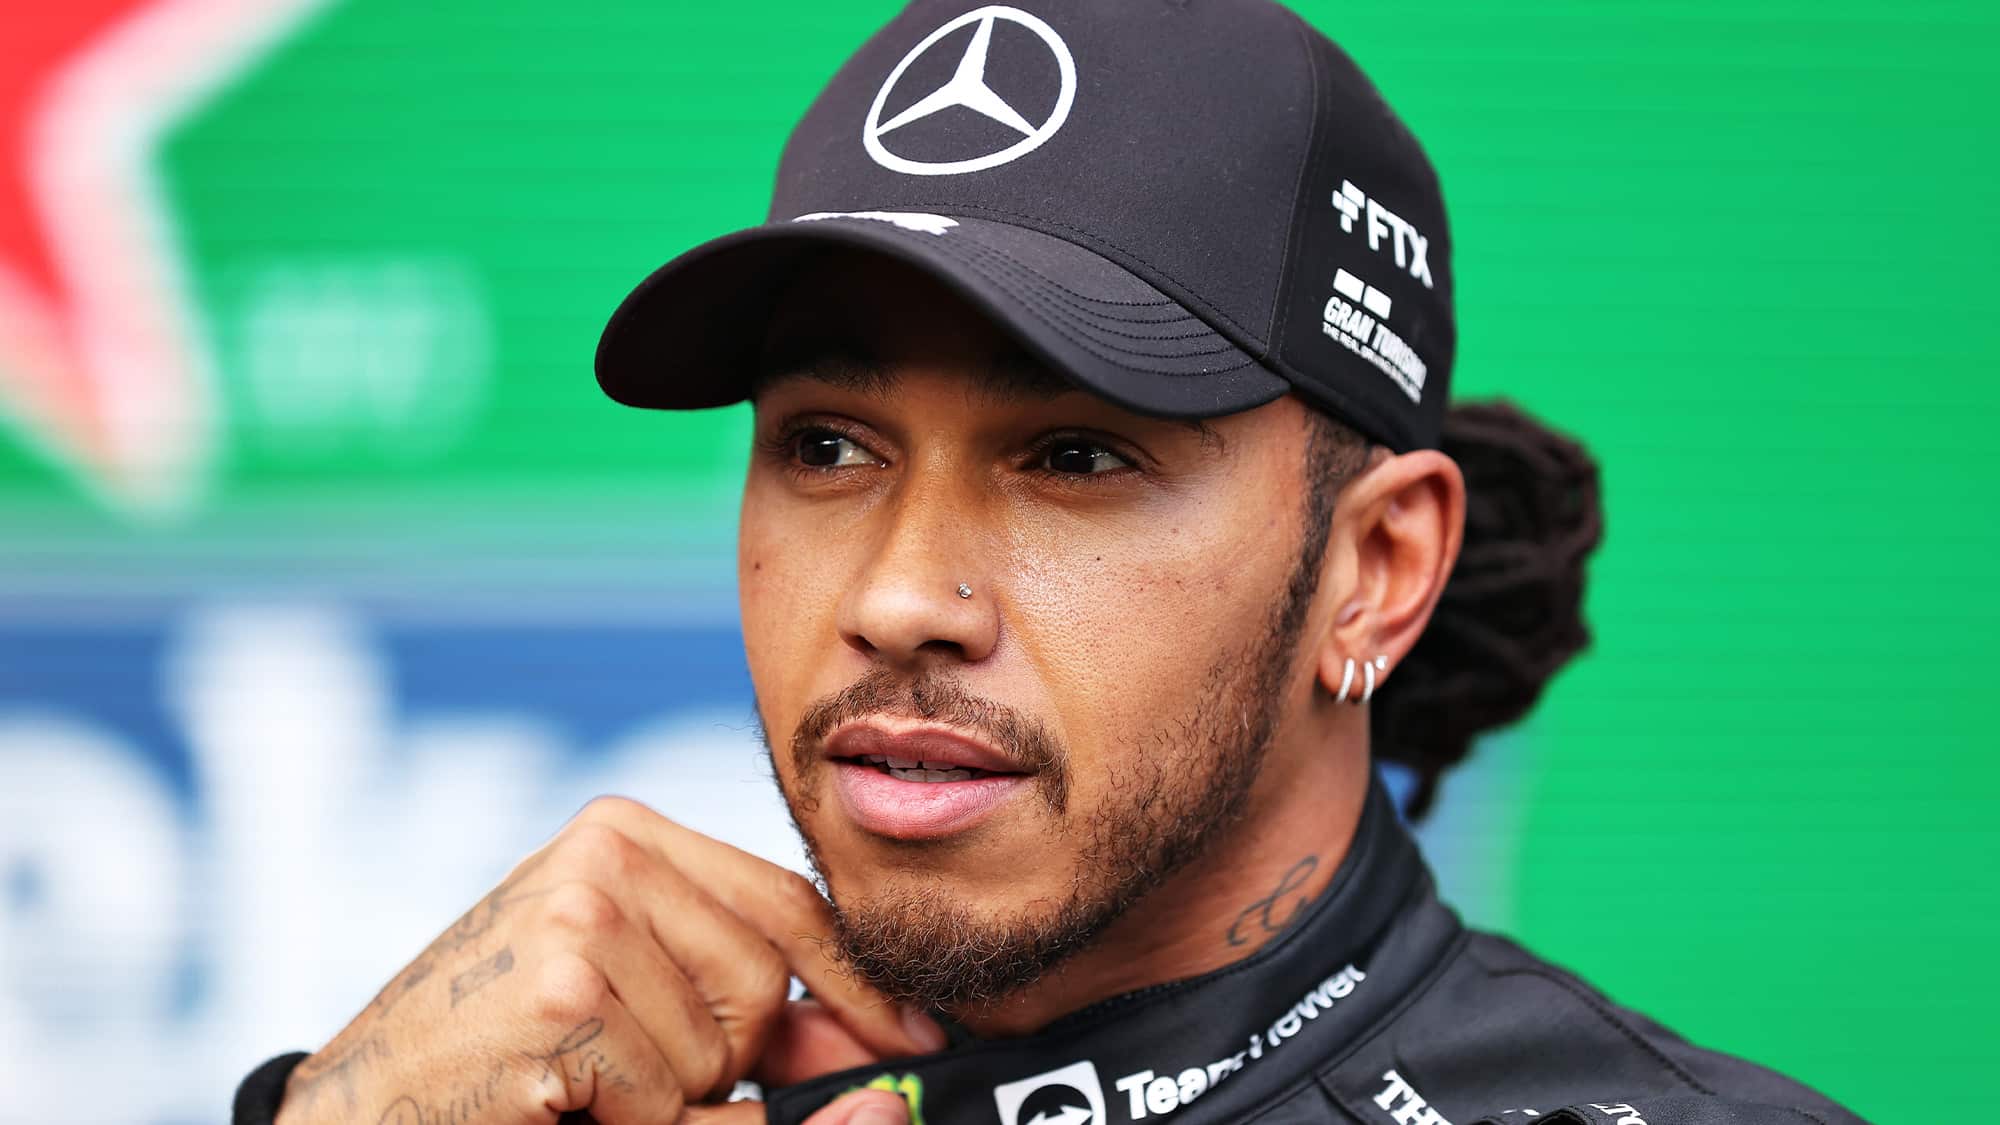 Lewis Hamilton at Interlagos 2021